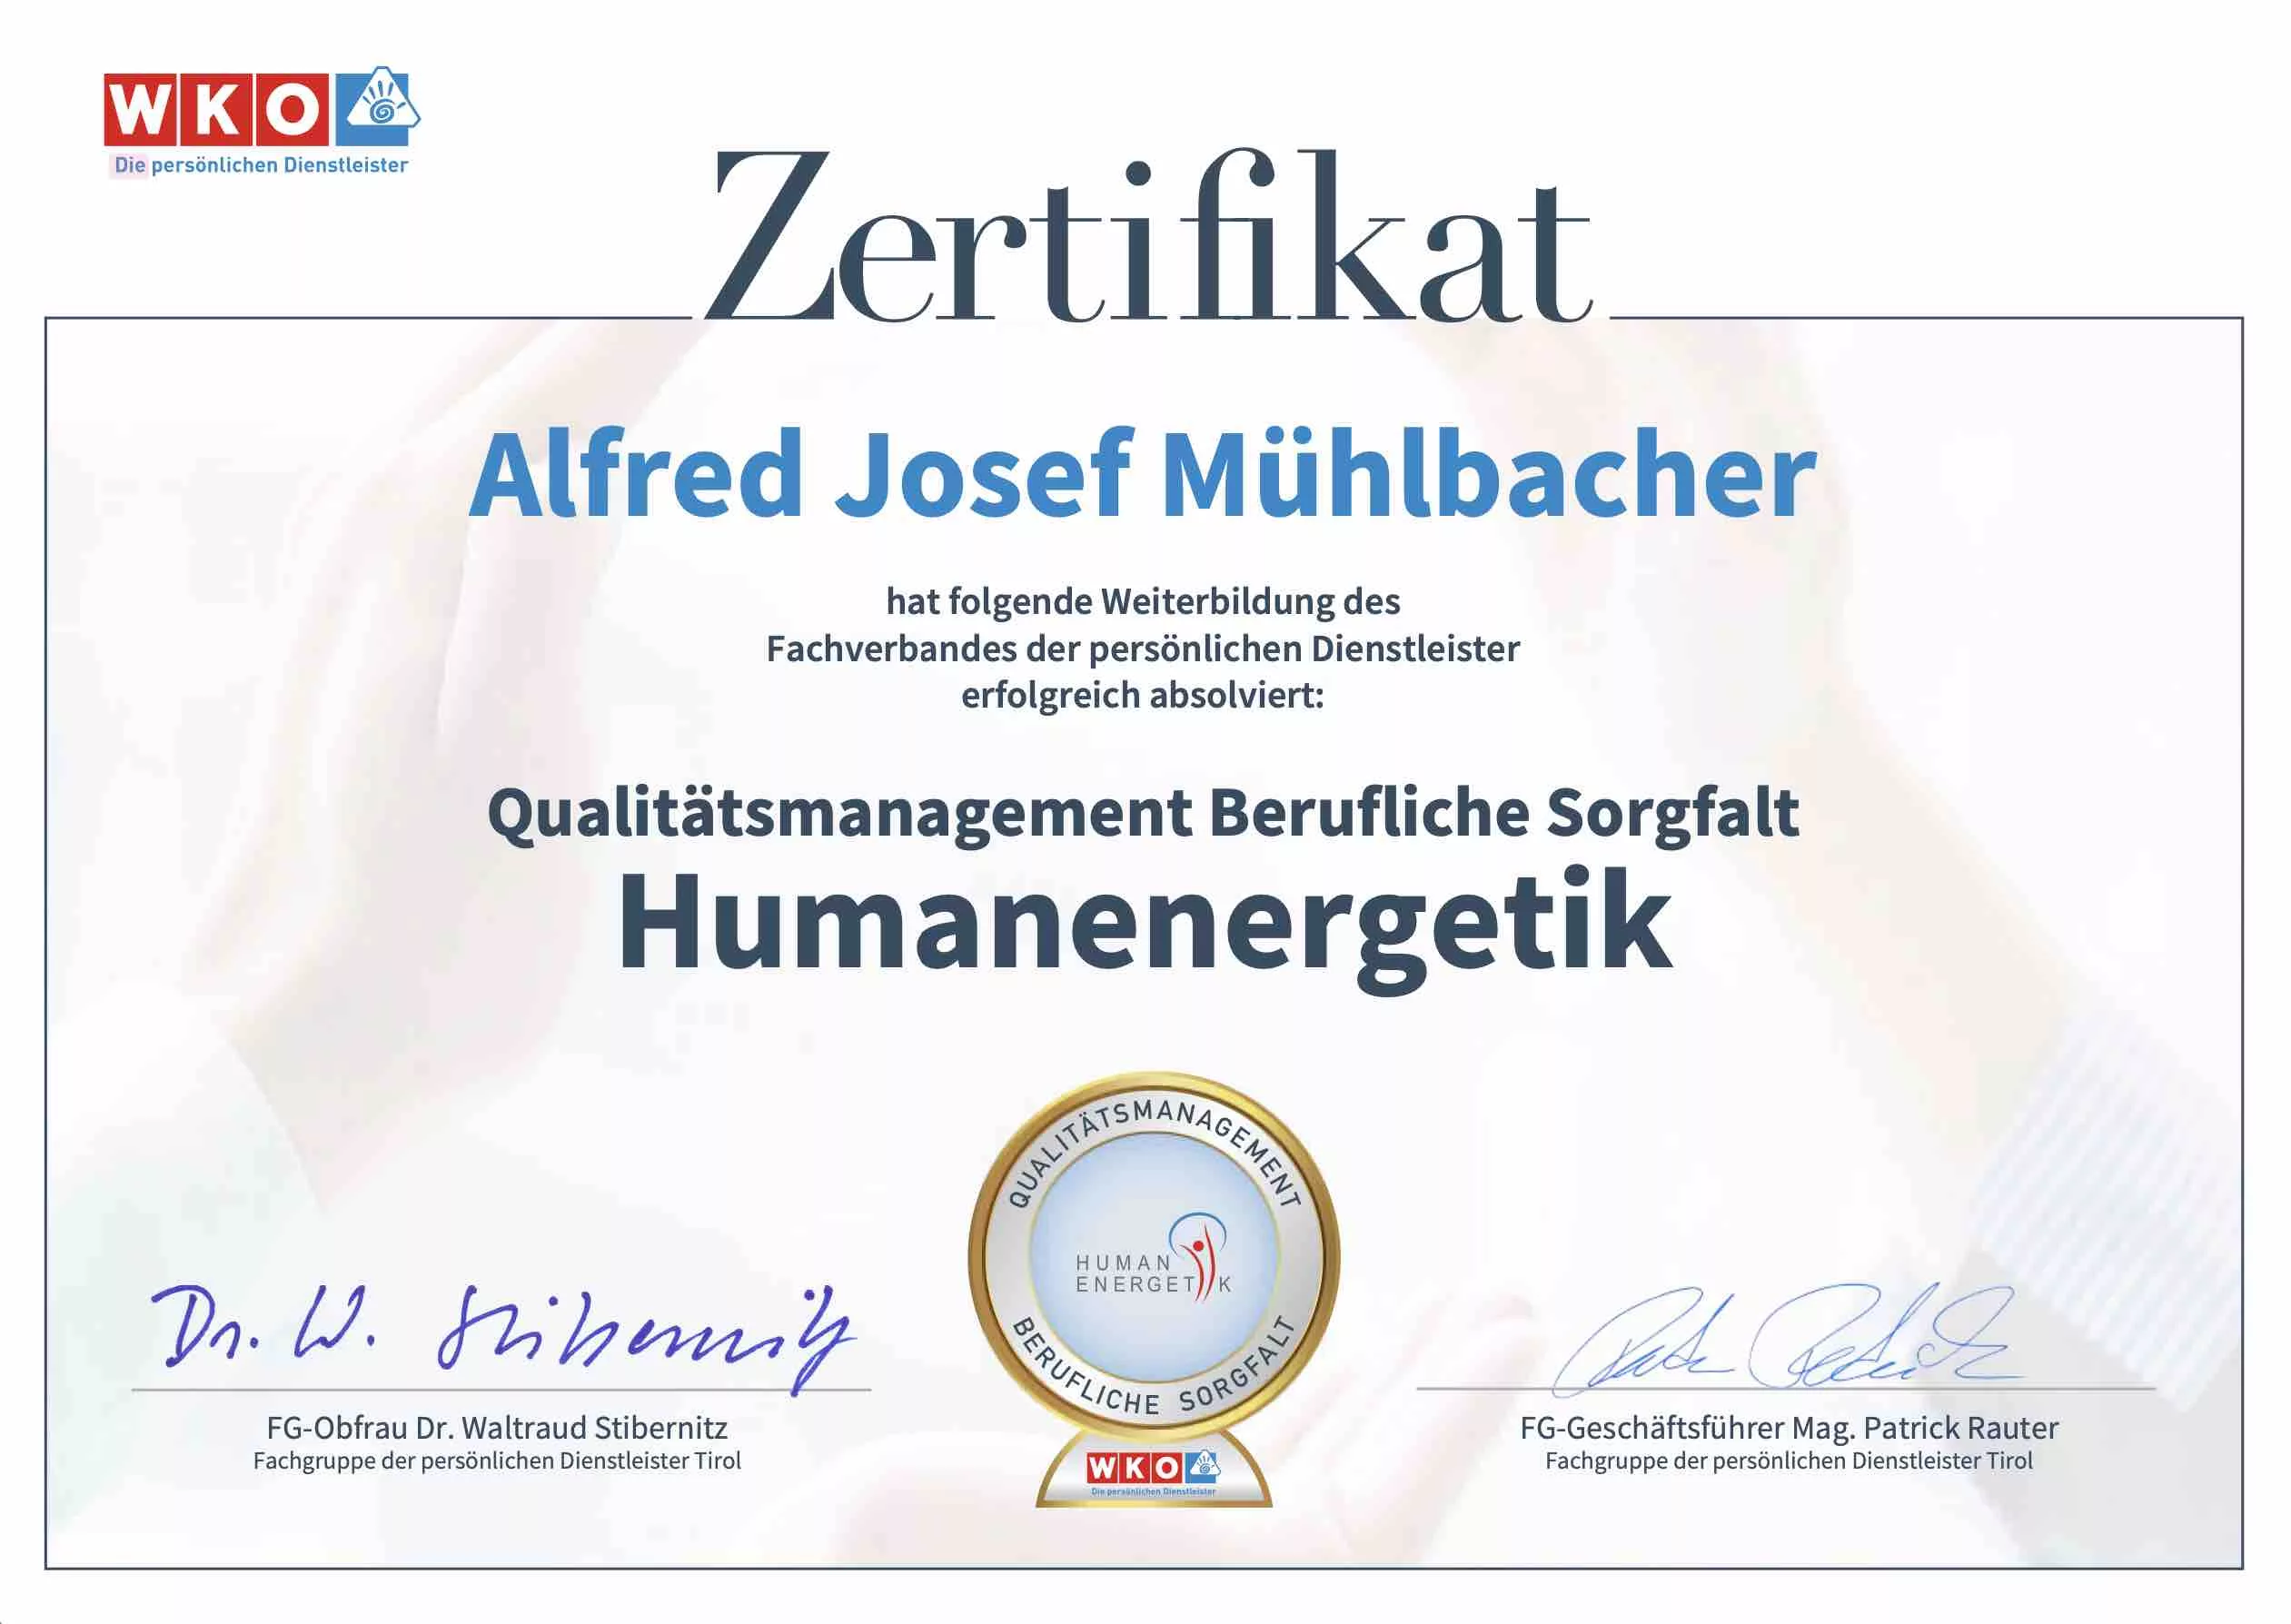 Qualitätsmanagement-Zertifikat für Energetik-Ausbildung Humanenergetik von Alfred Josef Mühlbacher